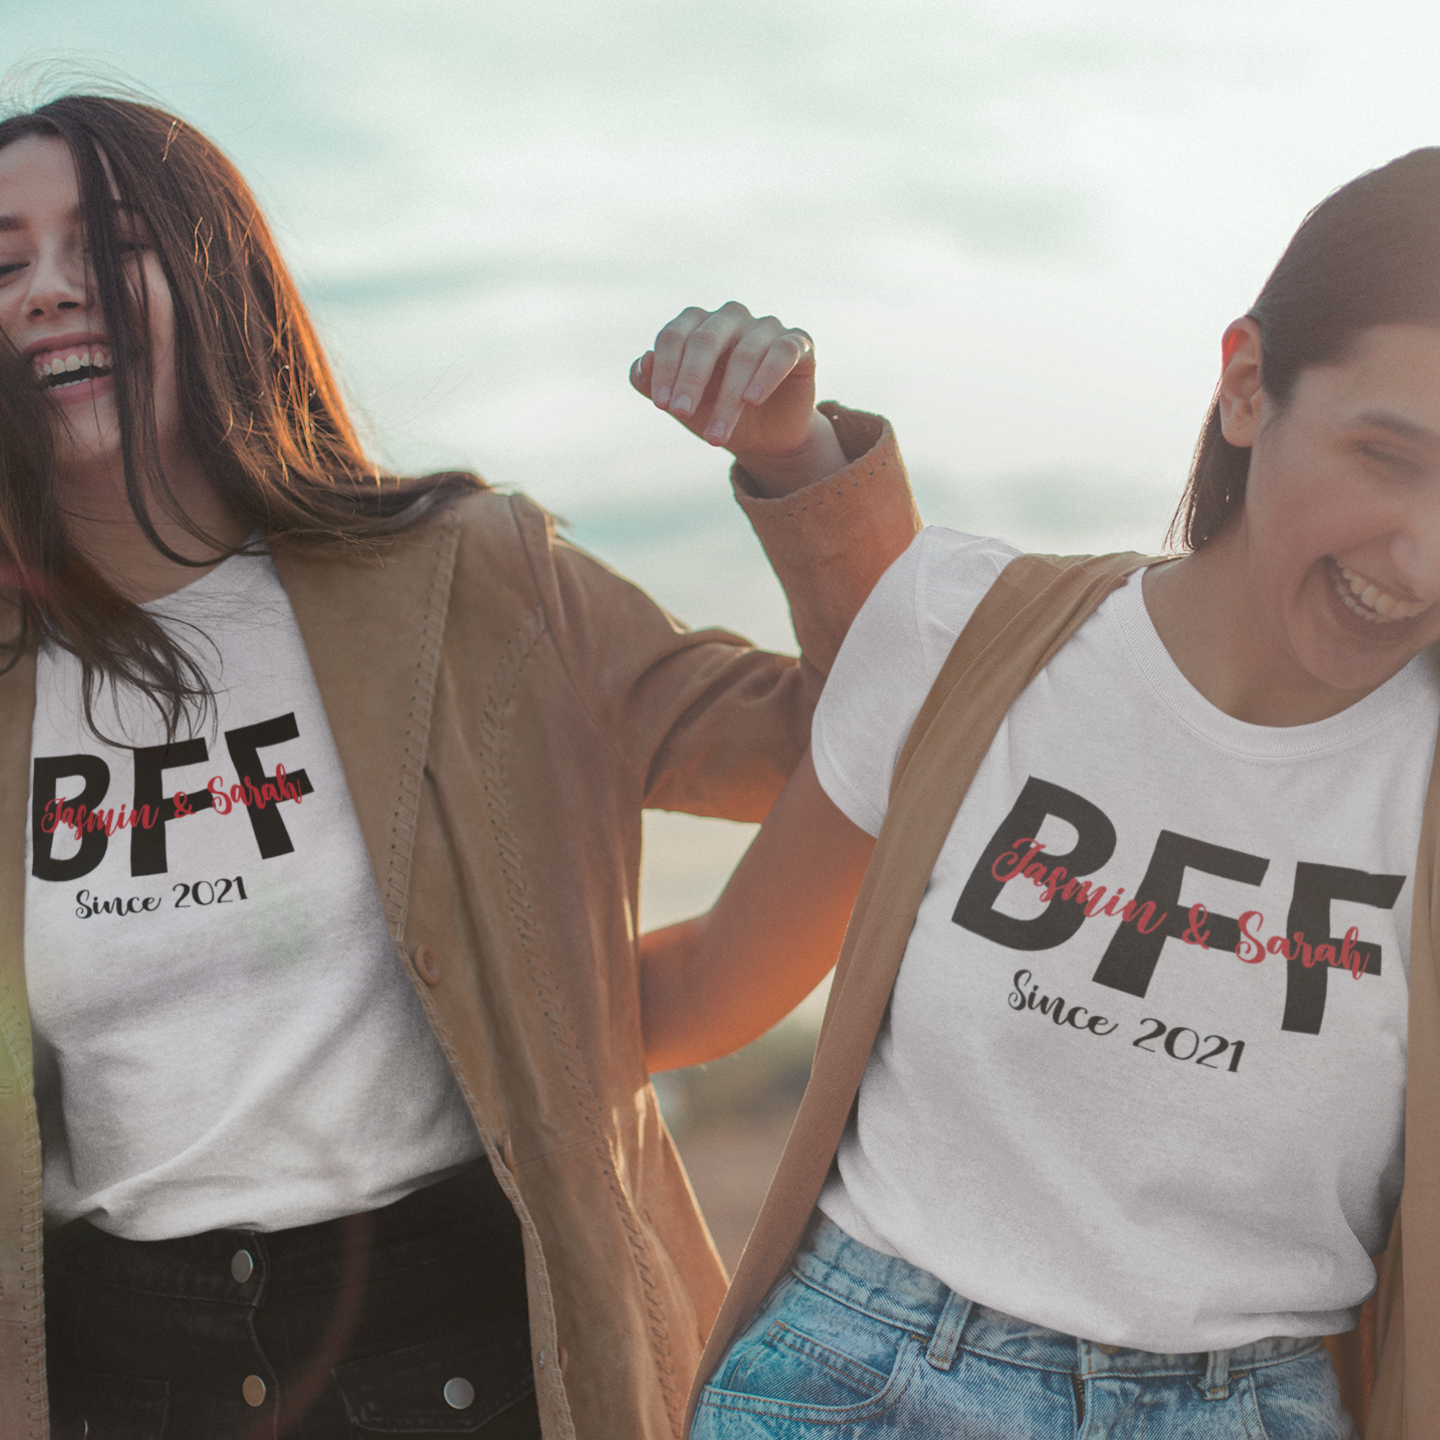 BFF sind ein einzigartig personalisiertes Geschenk für beste Freundinnen. Das T-Shirt Set beinhaltet ein Wunschnamen und Wunschdatum, sodass Sie ein unvergessliches Geschenk mit einem einzigartigen persönlichen Touch machen können. weisse damen shirts